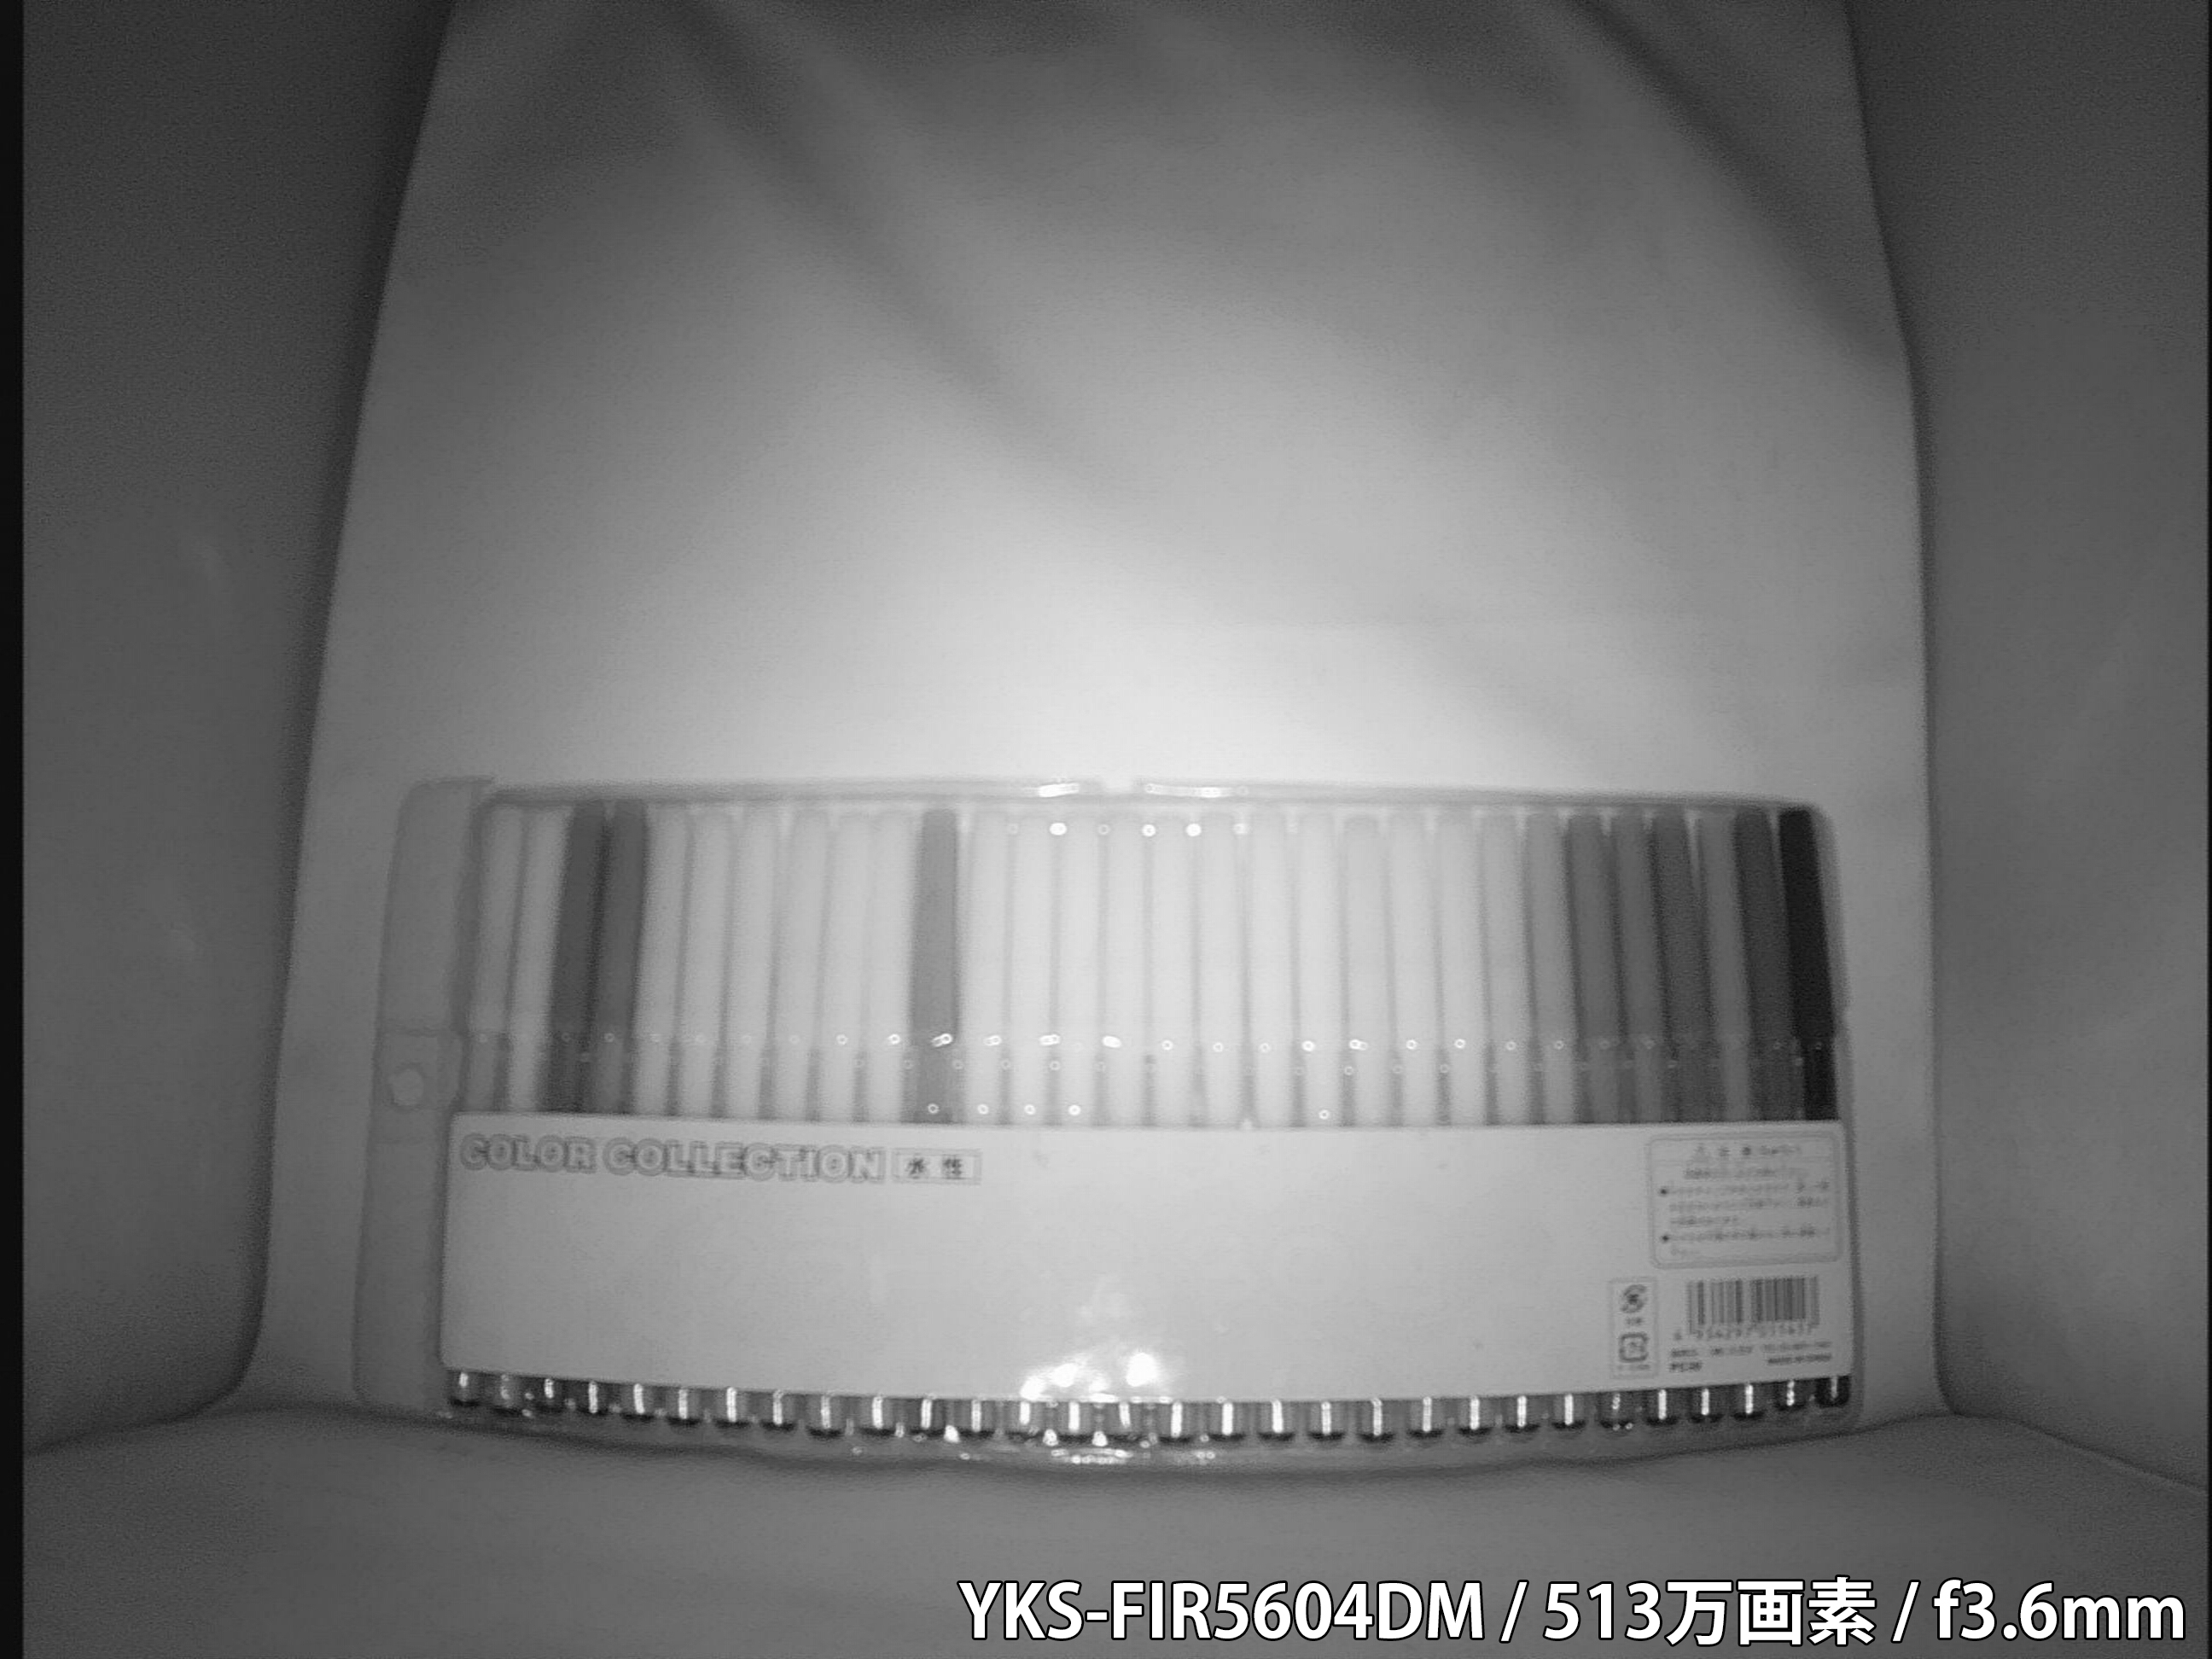 【YKS-FIR5604DM】 カメラから約40cm離れた被写体を低照度撮影